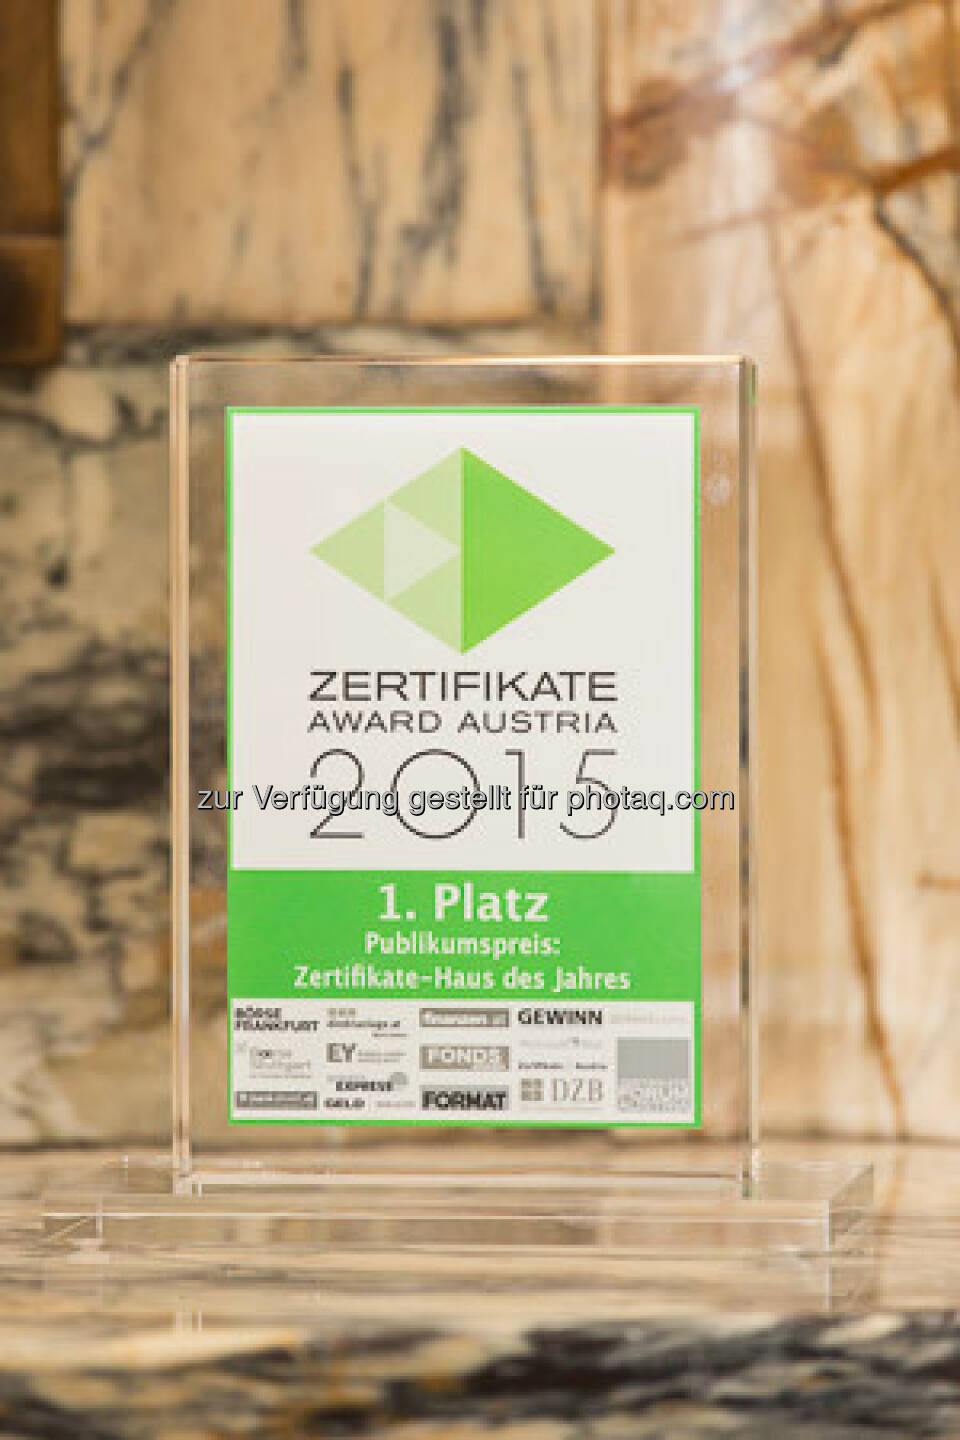 Zertifikate Award 2015 - Trophäe Publikumspreis